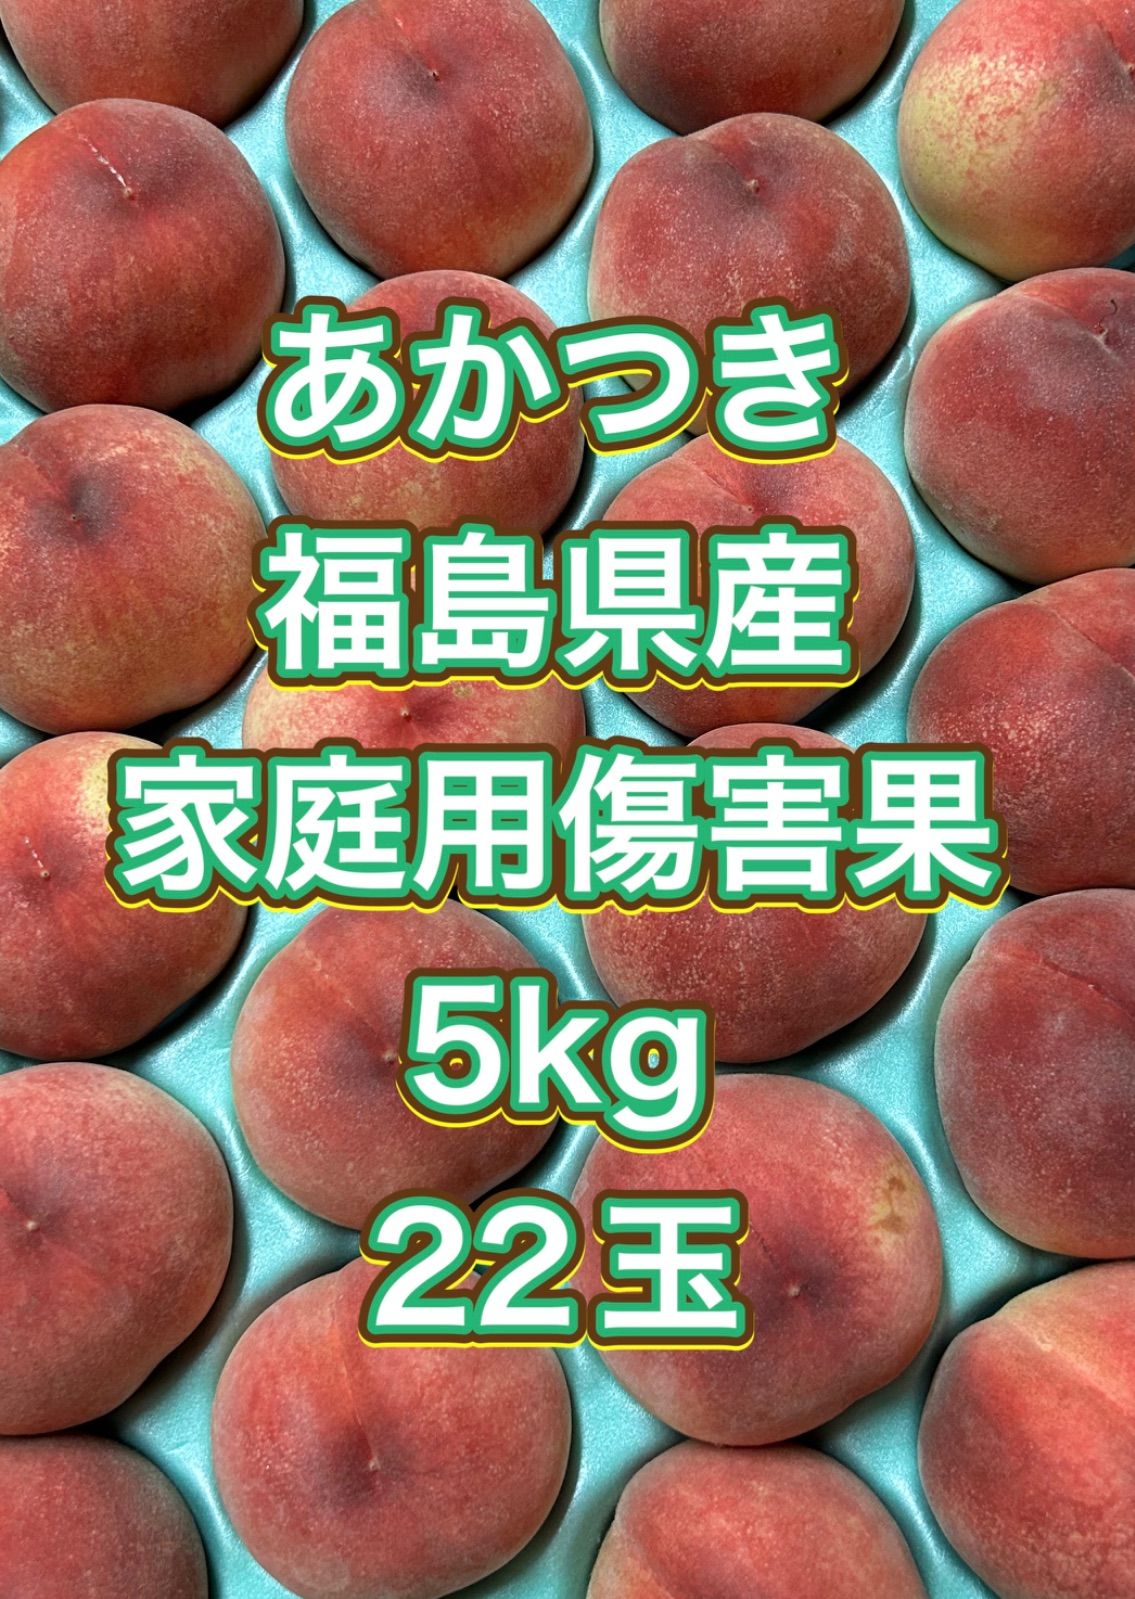 確認用 あかつきネオ 福島県産 家庭用 5kg22玉 果物 | tacwin.com